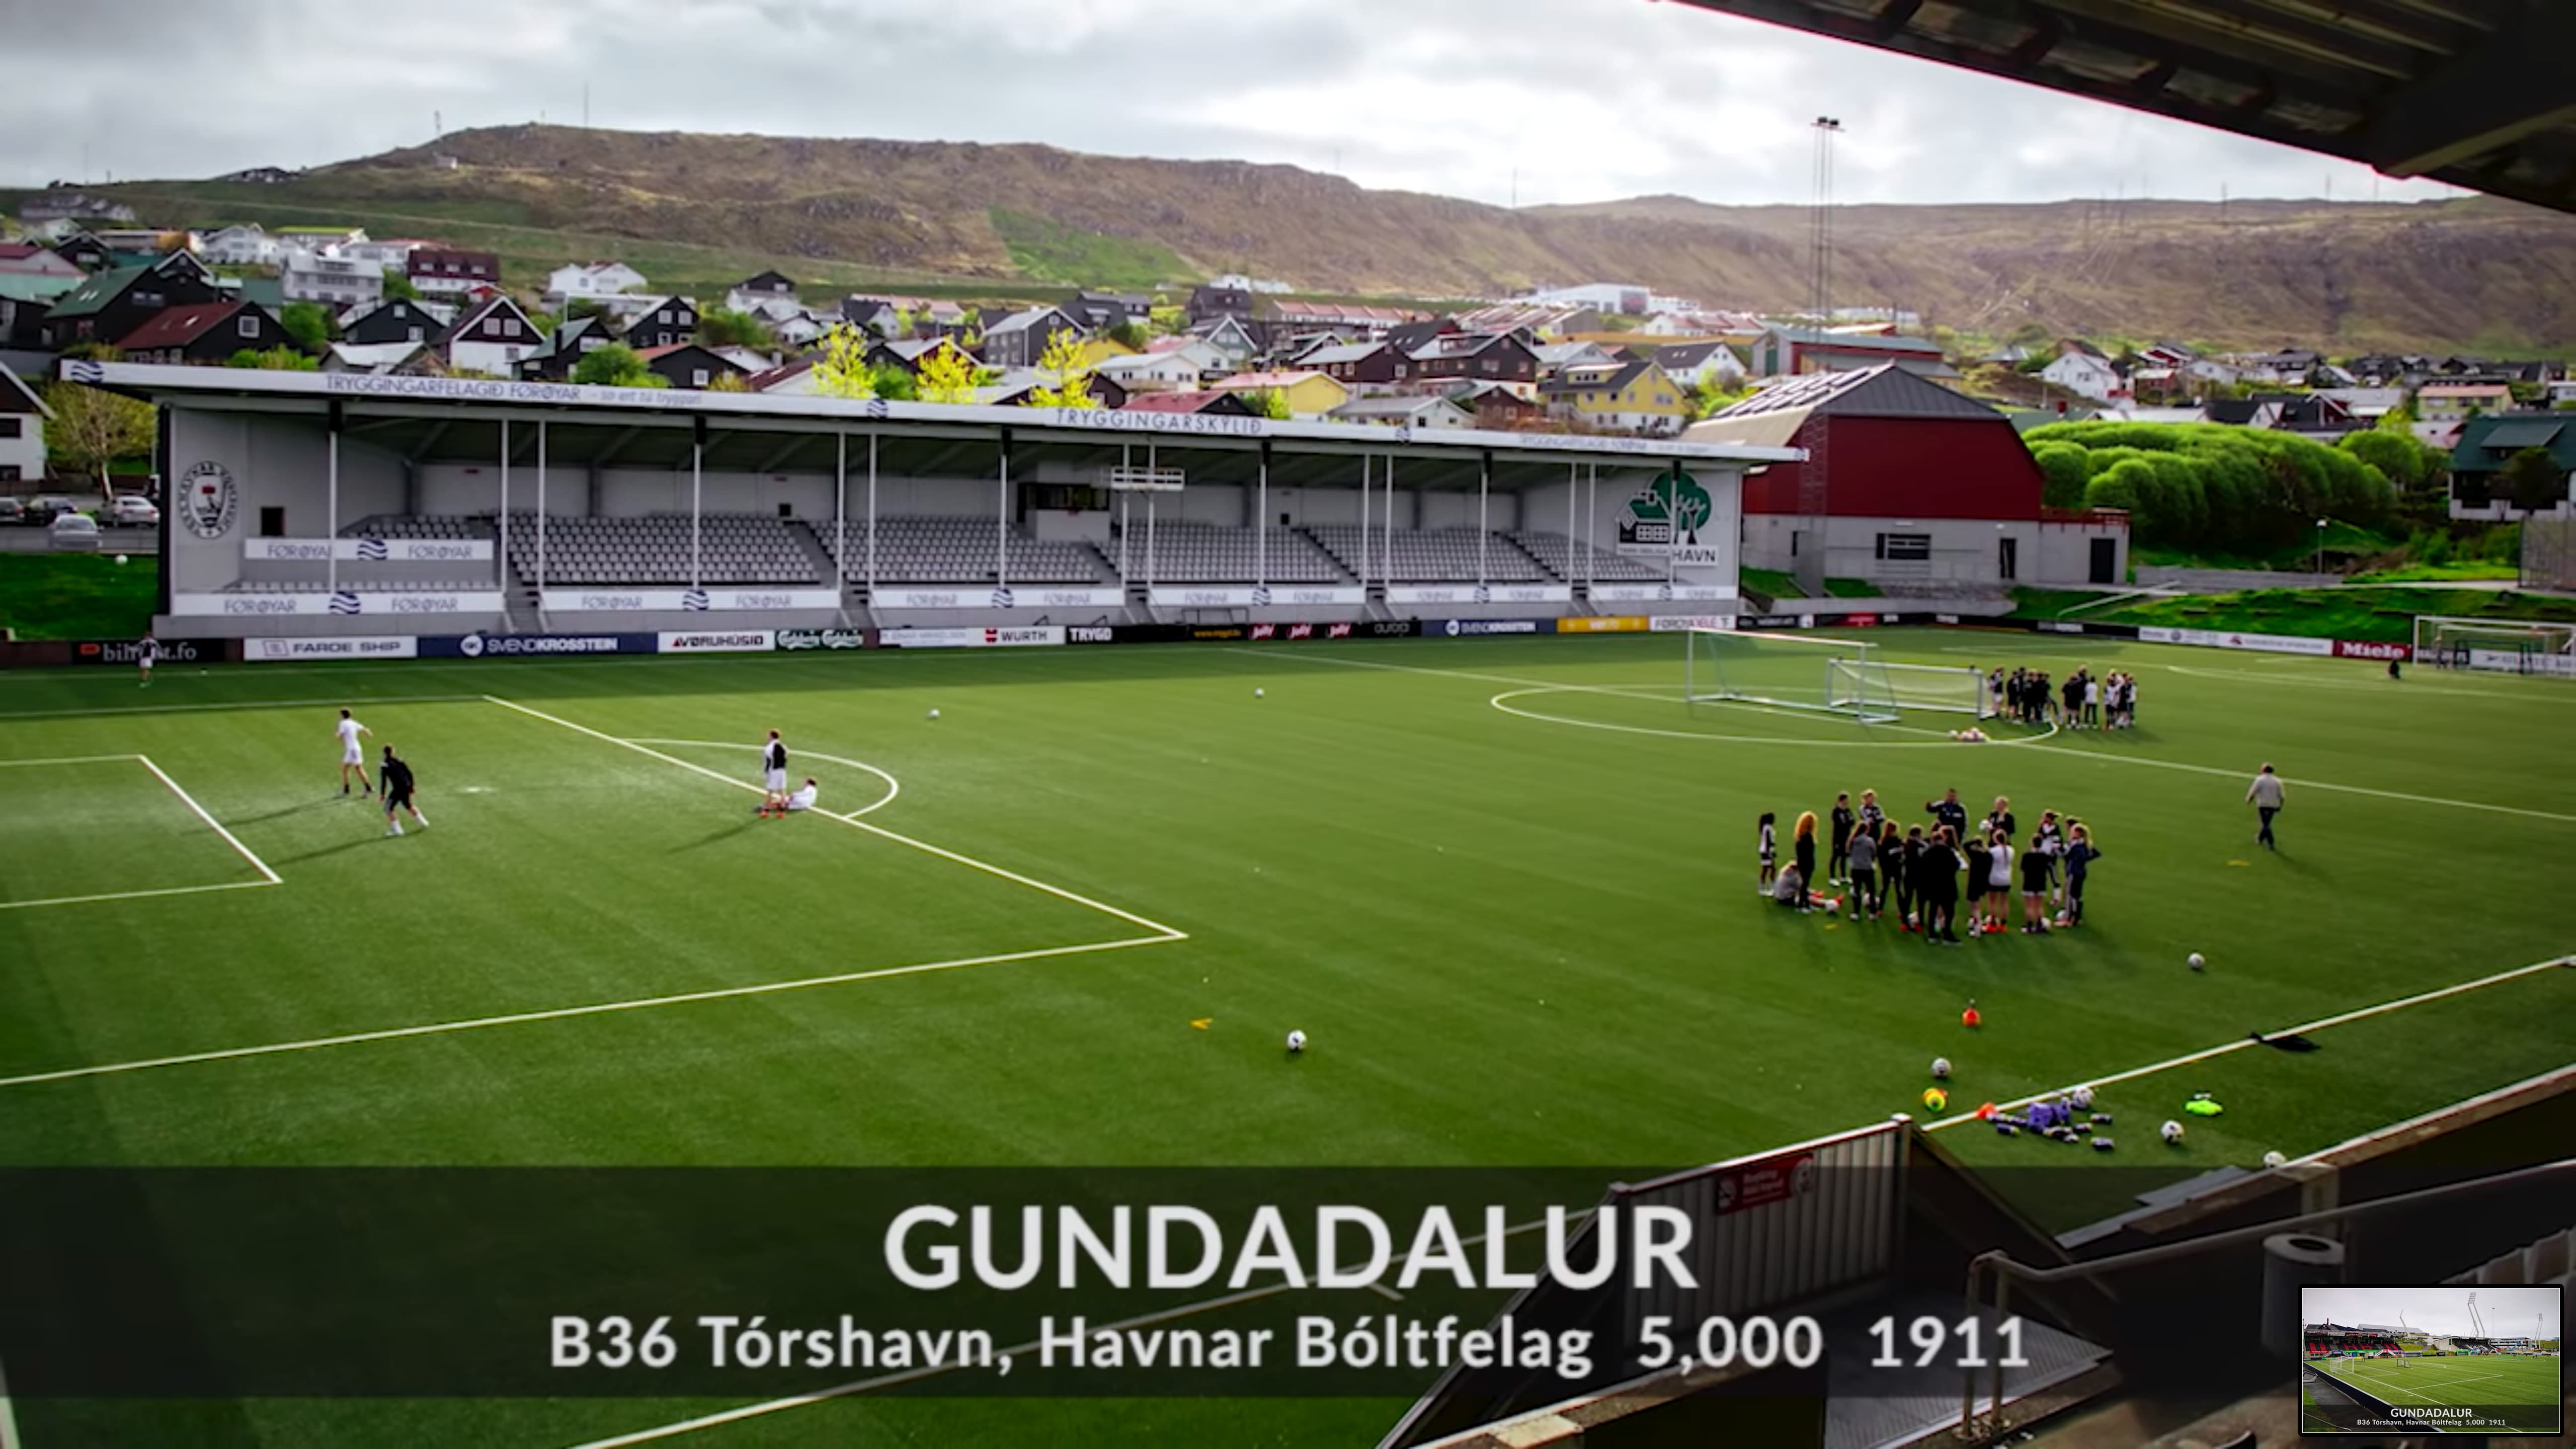 B36 Torshavn stadium from the Faroe Islands Premier League